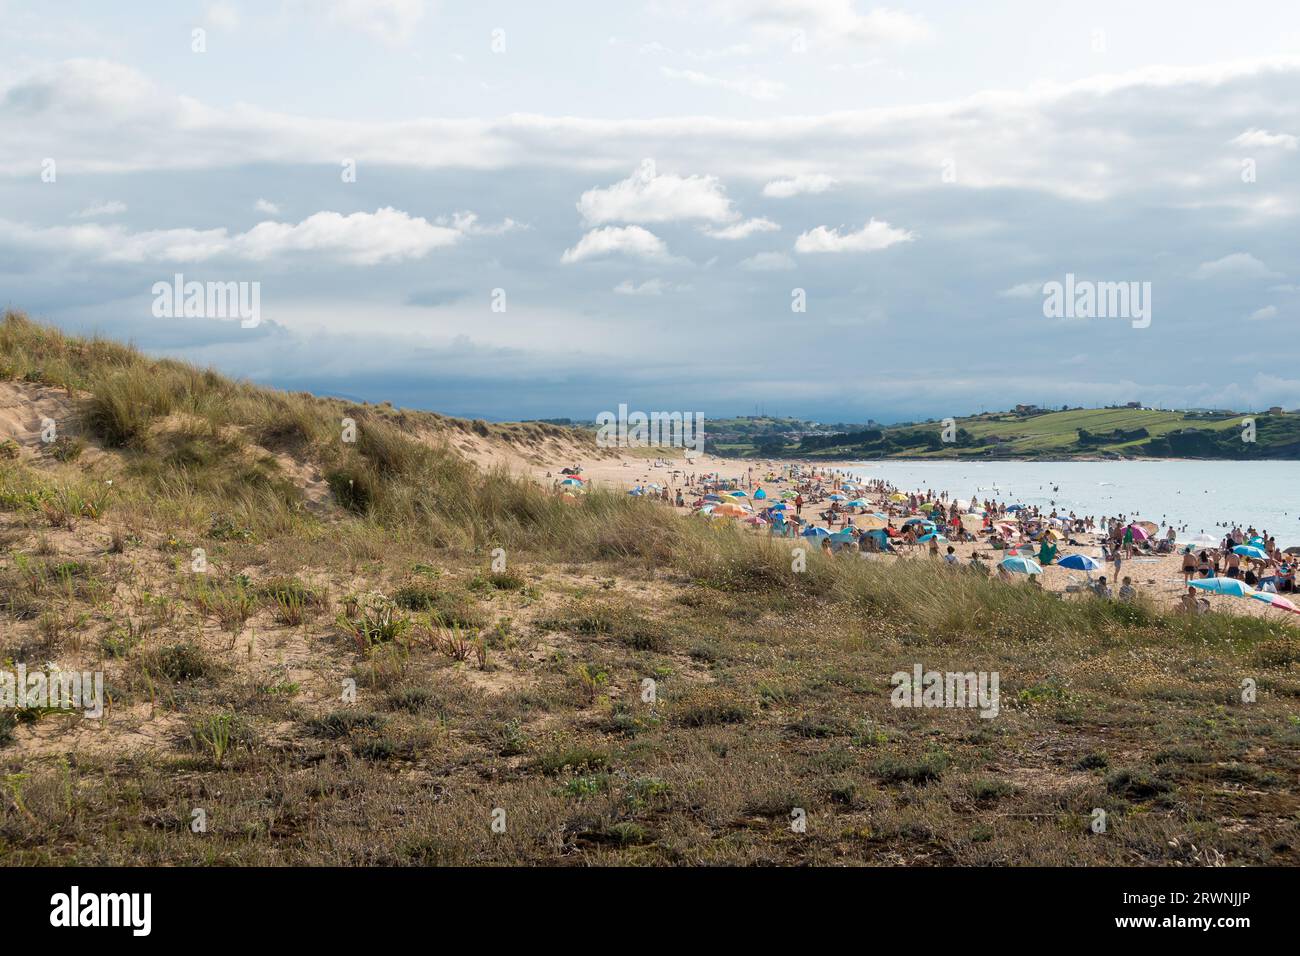 Liencres beach, Cantabria, Spain Stock Photo